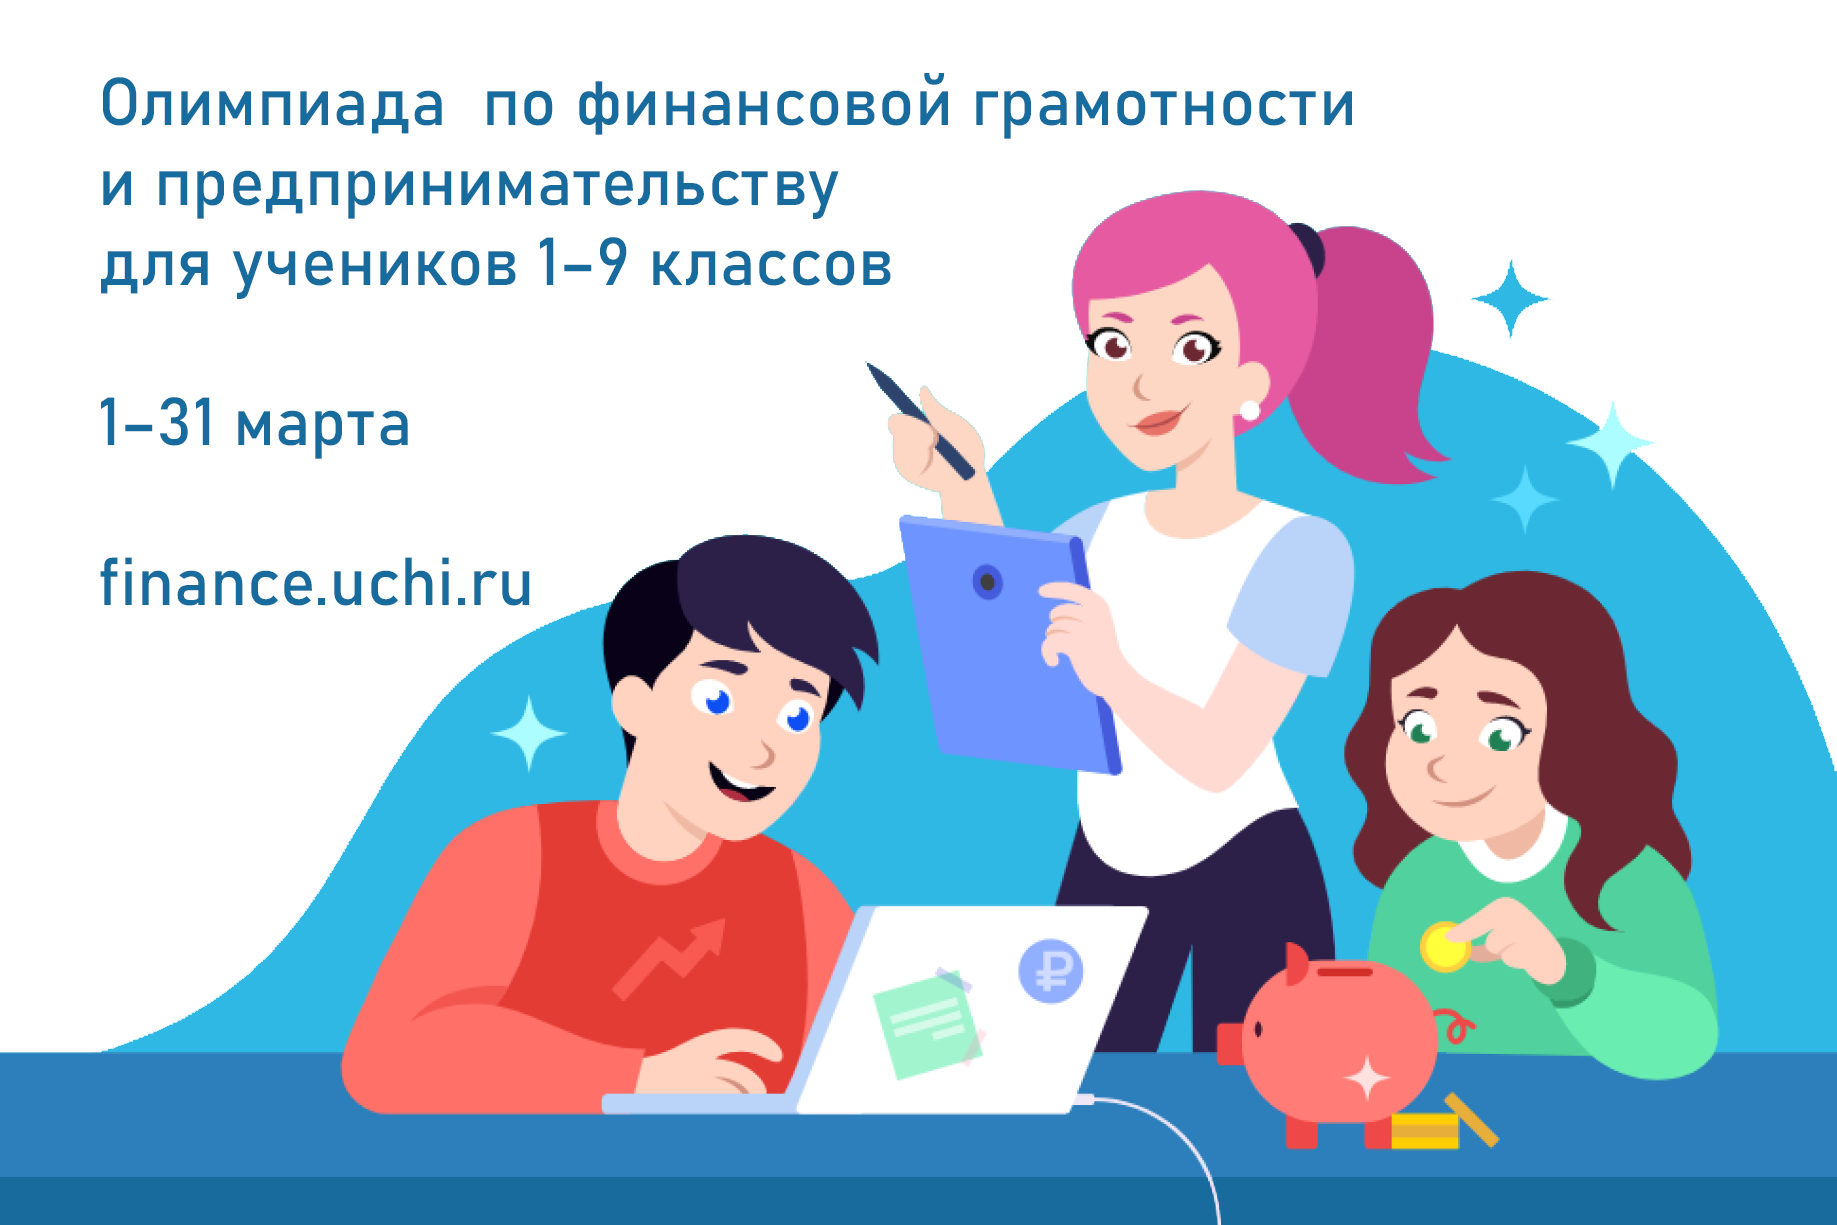 Всероссийская онлайн-олимпиада по финансовой грамотности и предпринимательству для учеников 1–9 классов.